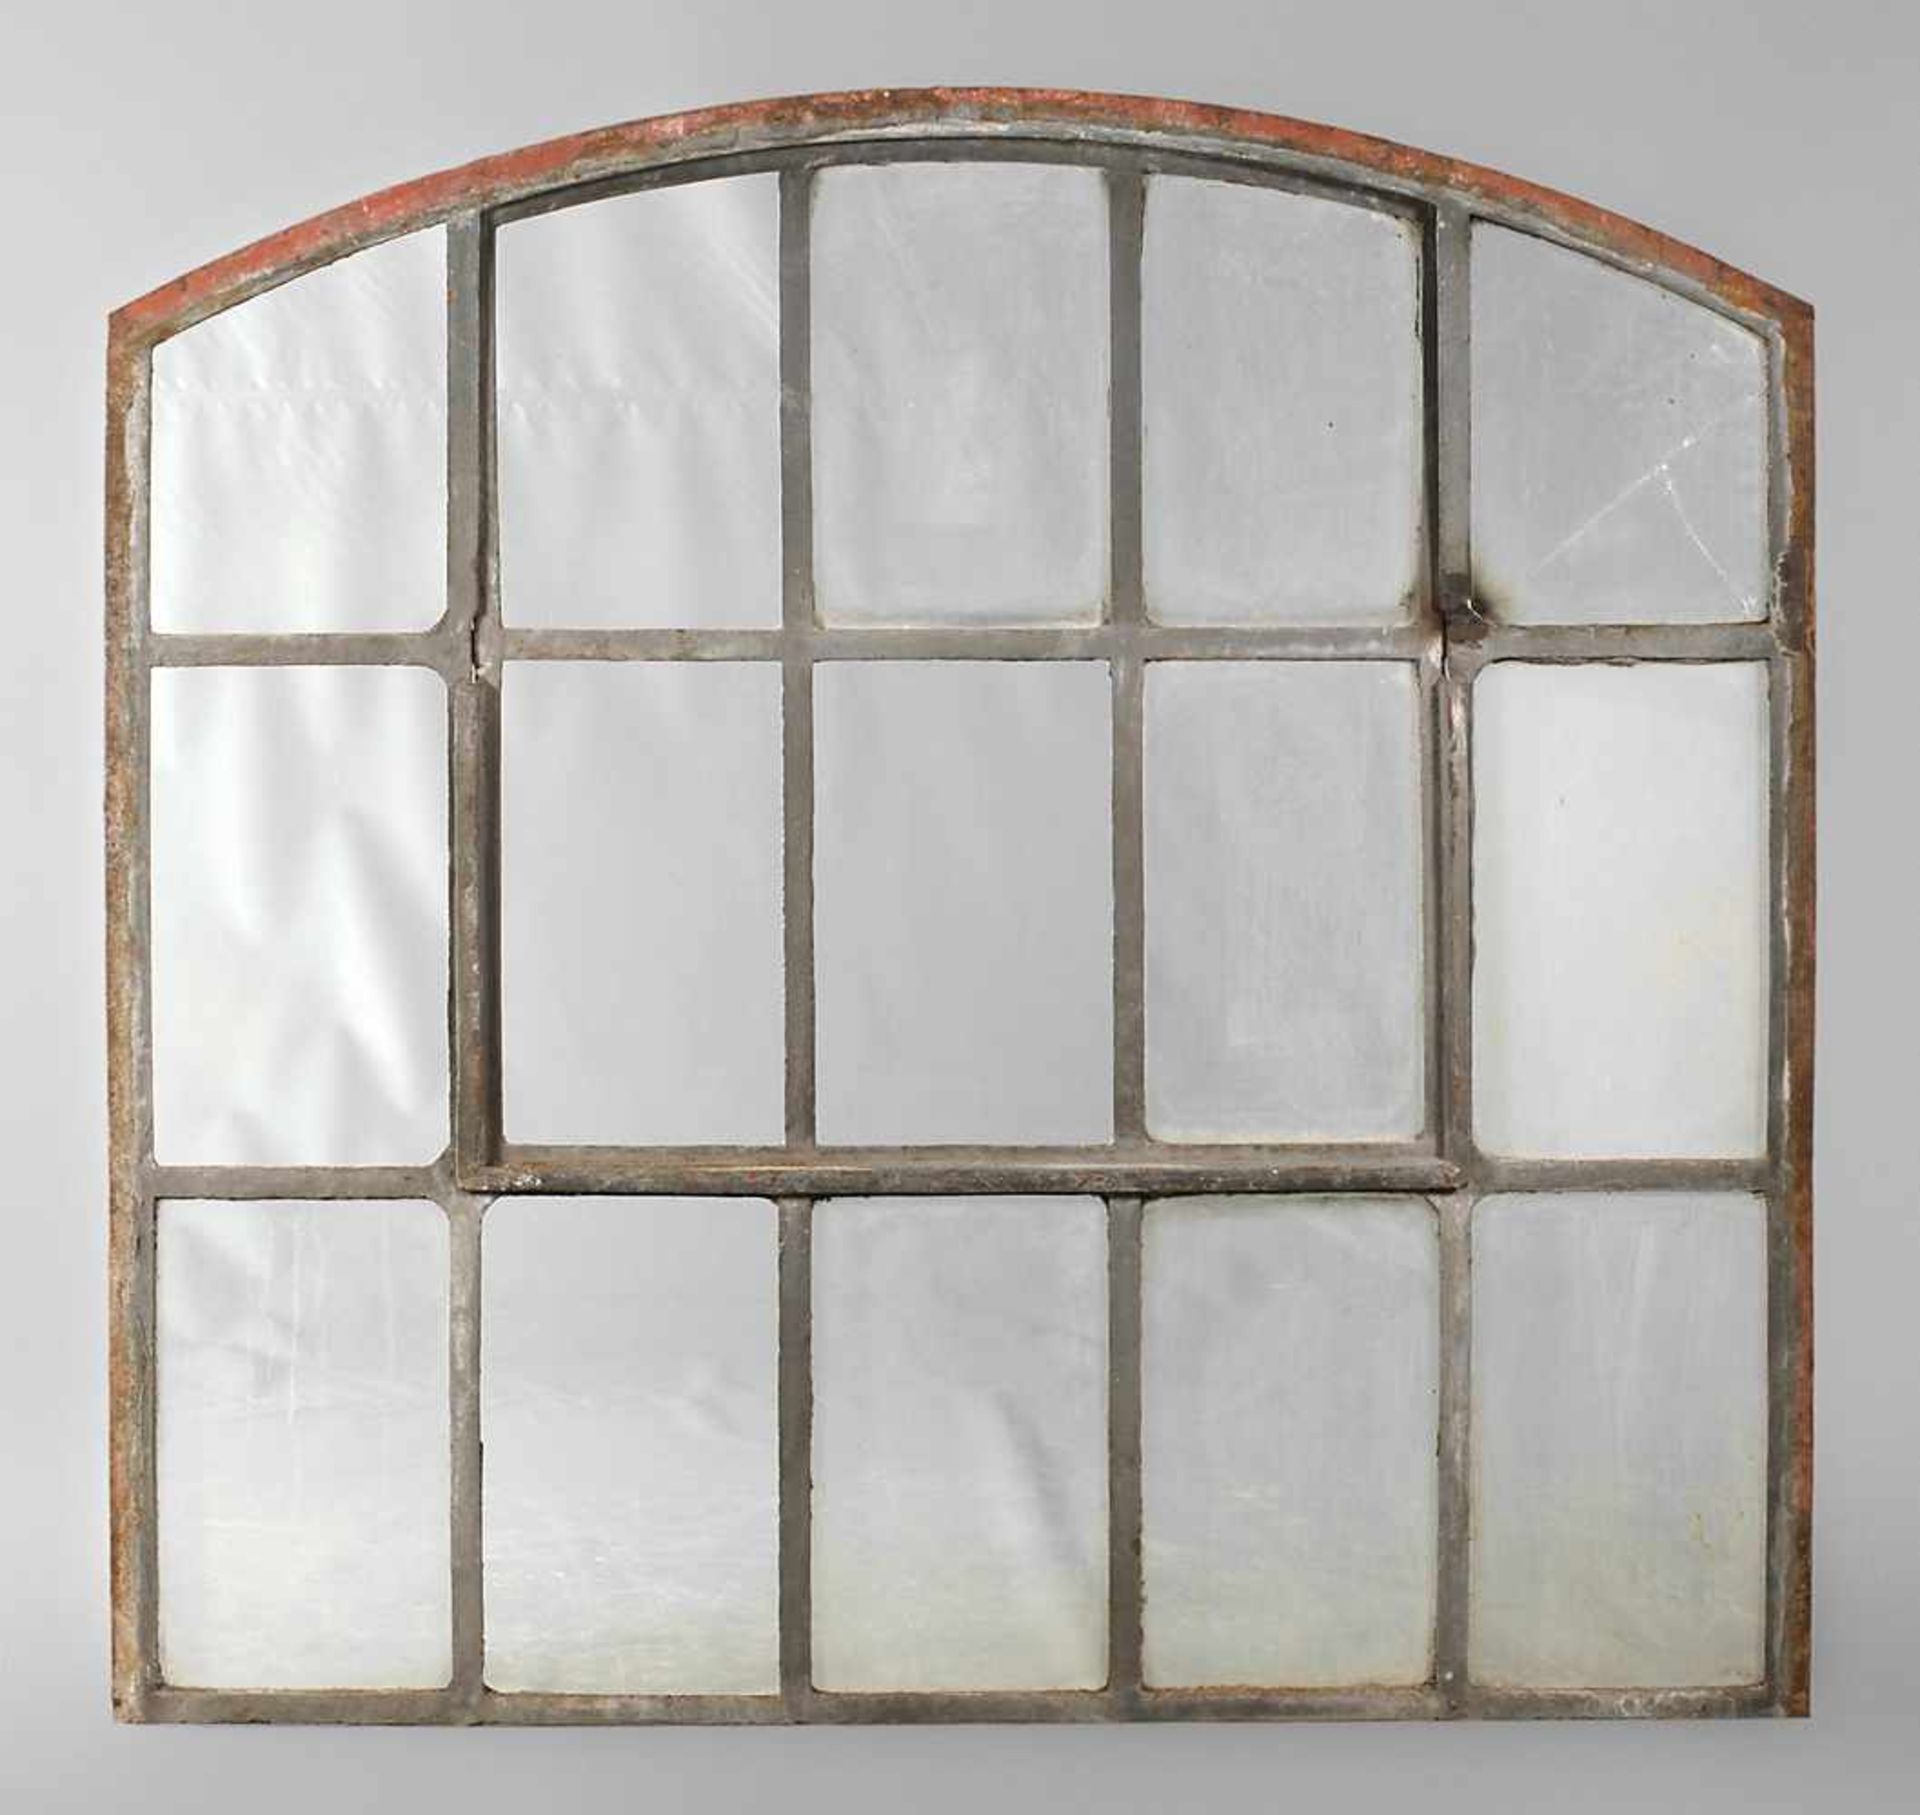 Industriefenster Gusseisenum 1920, einteilig mit Kippflügel, Abschluss mit Segmentbogen,